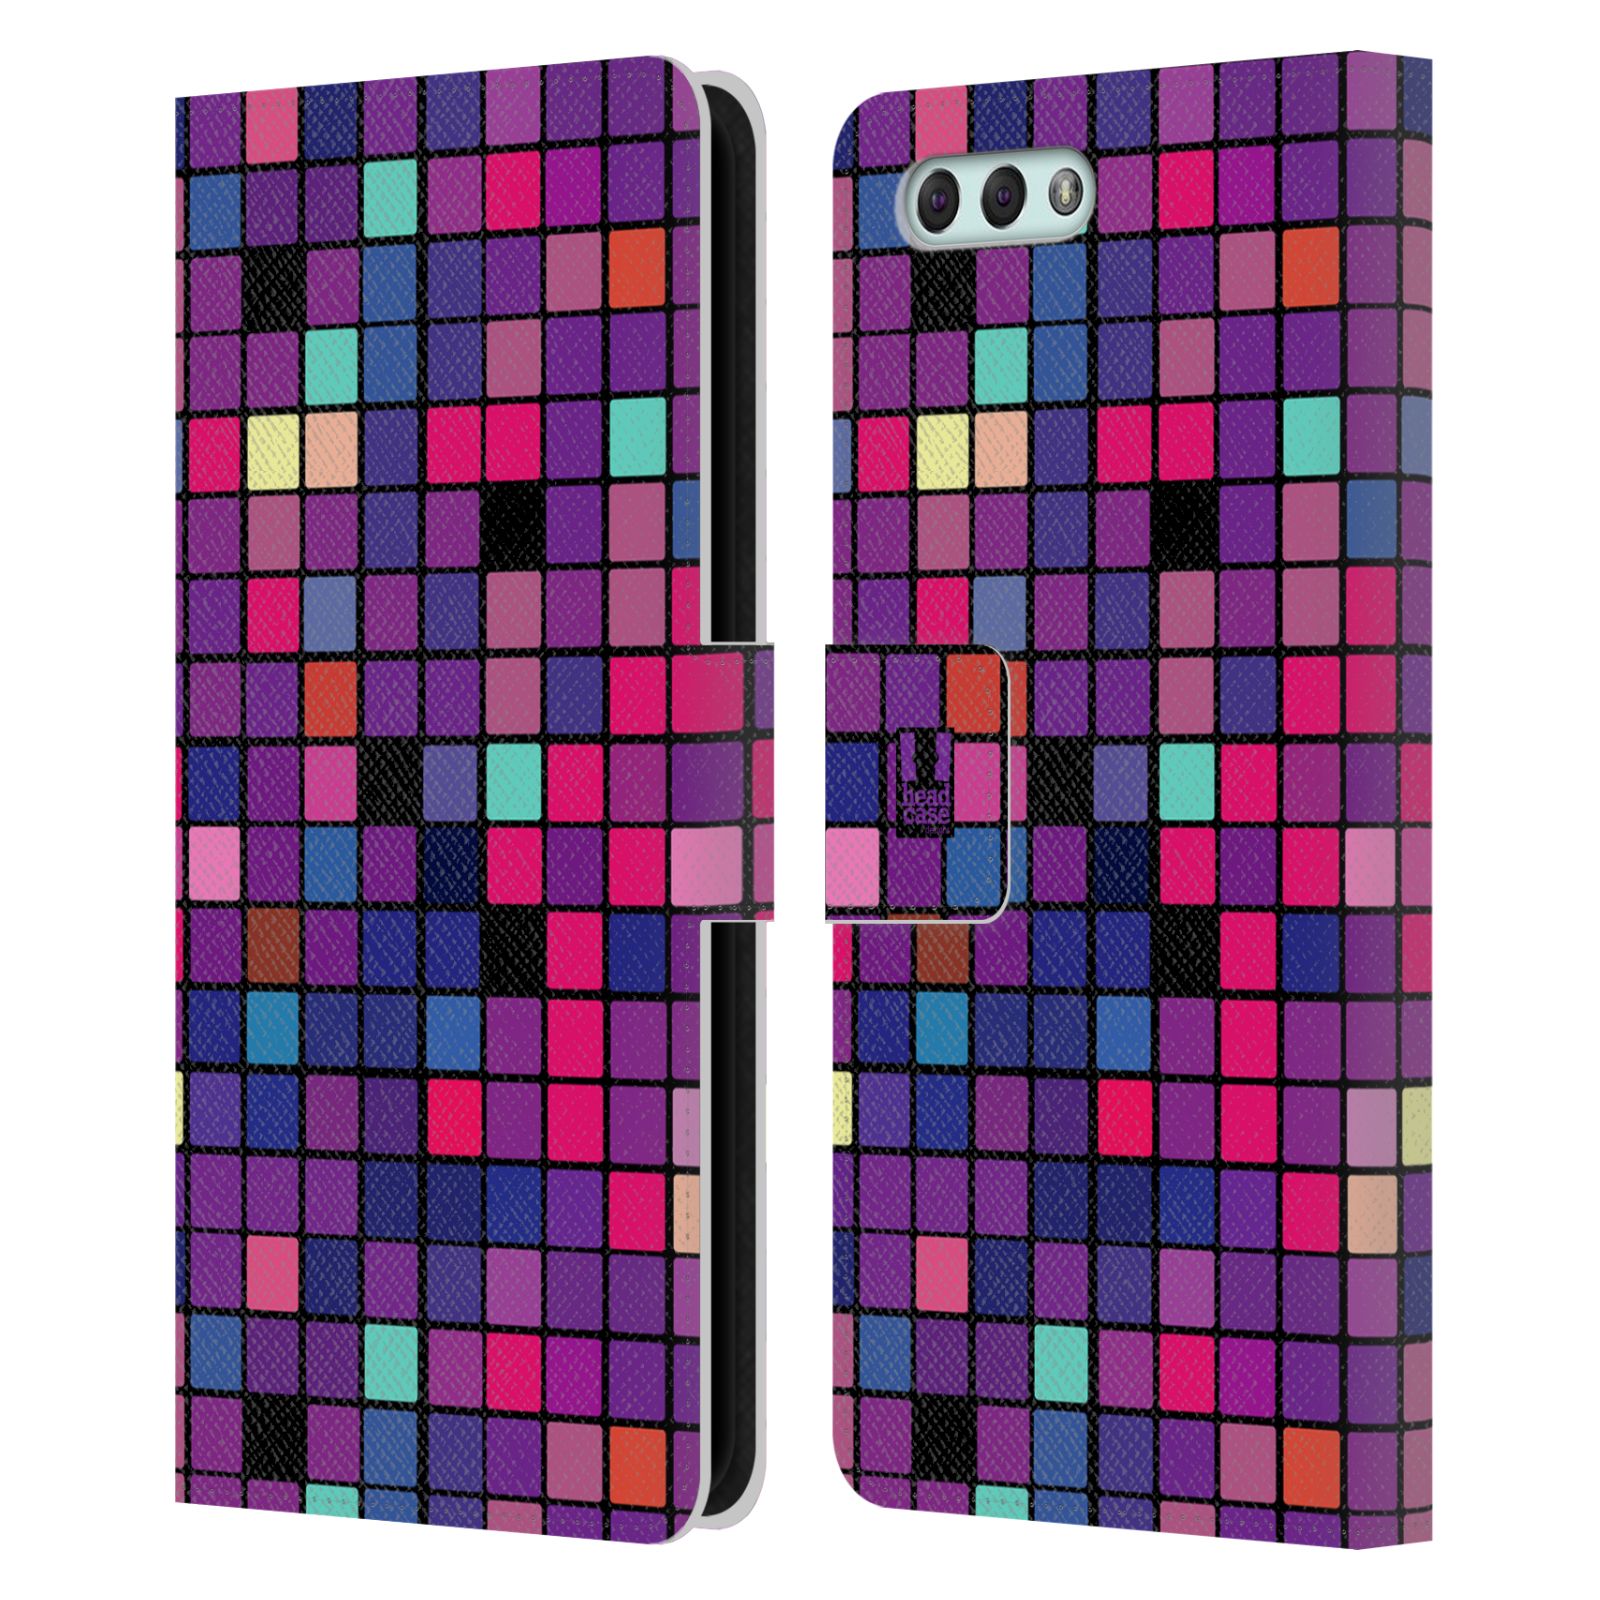 Pouzdro pro mobil Asus Zenfone 4 ZE554KL  - Disko style fialová